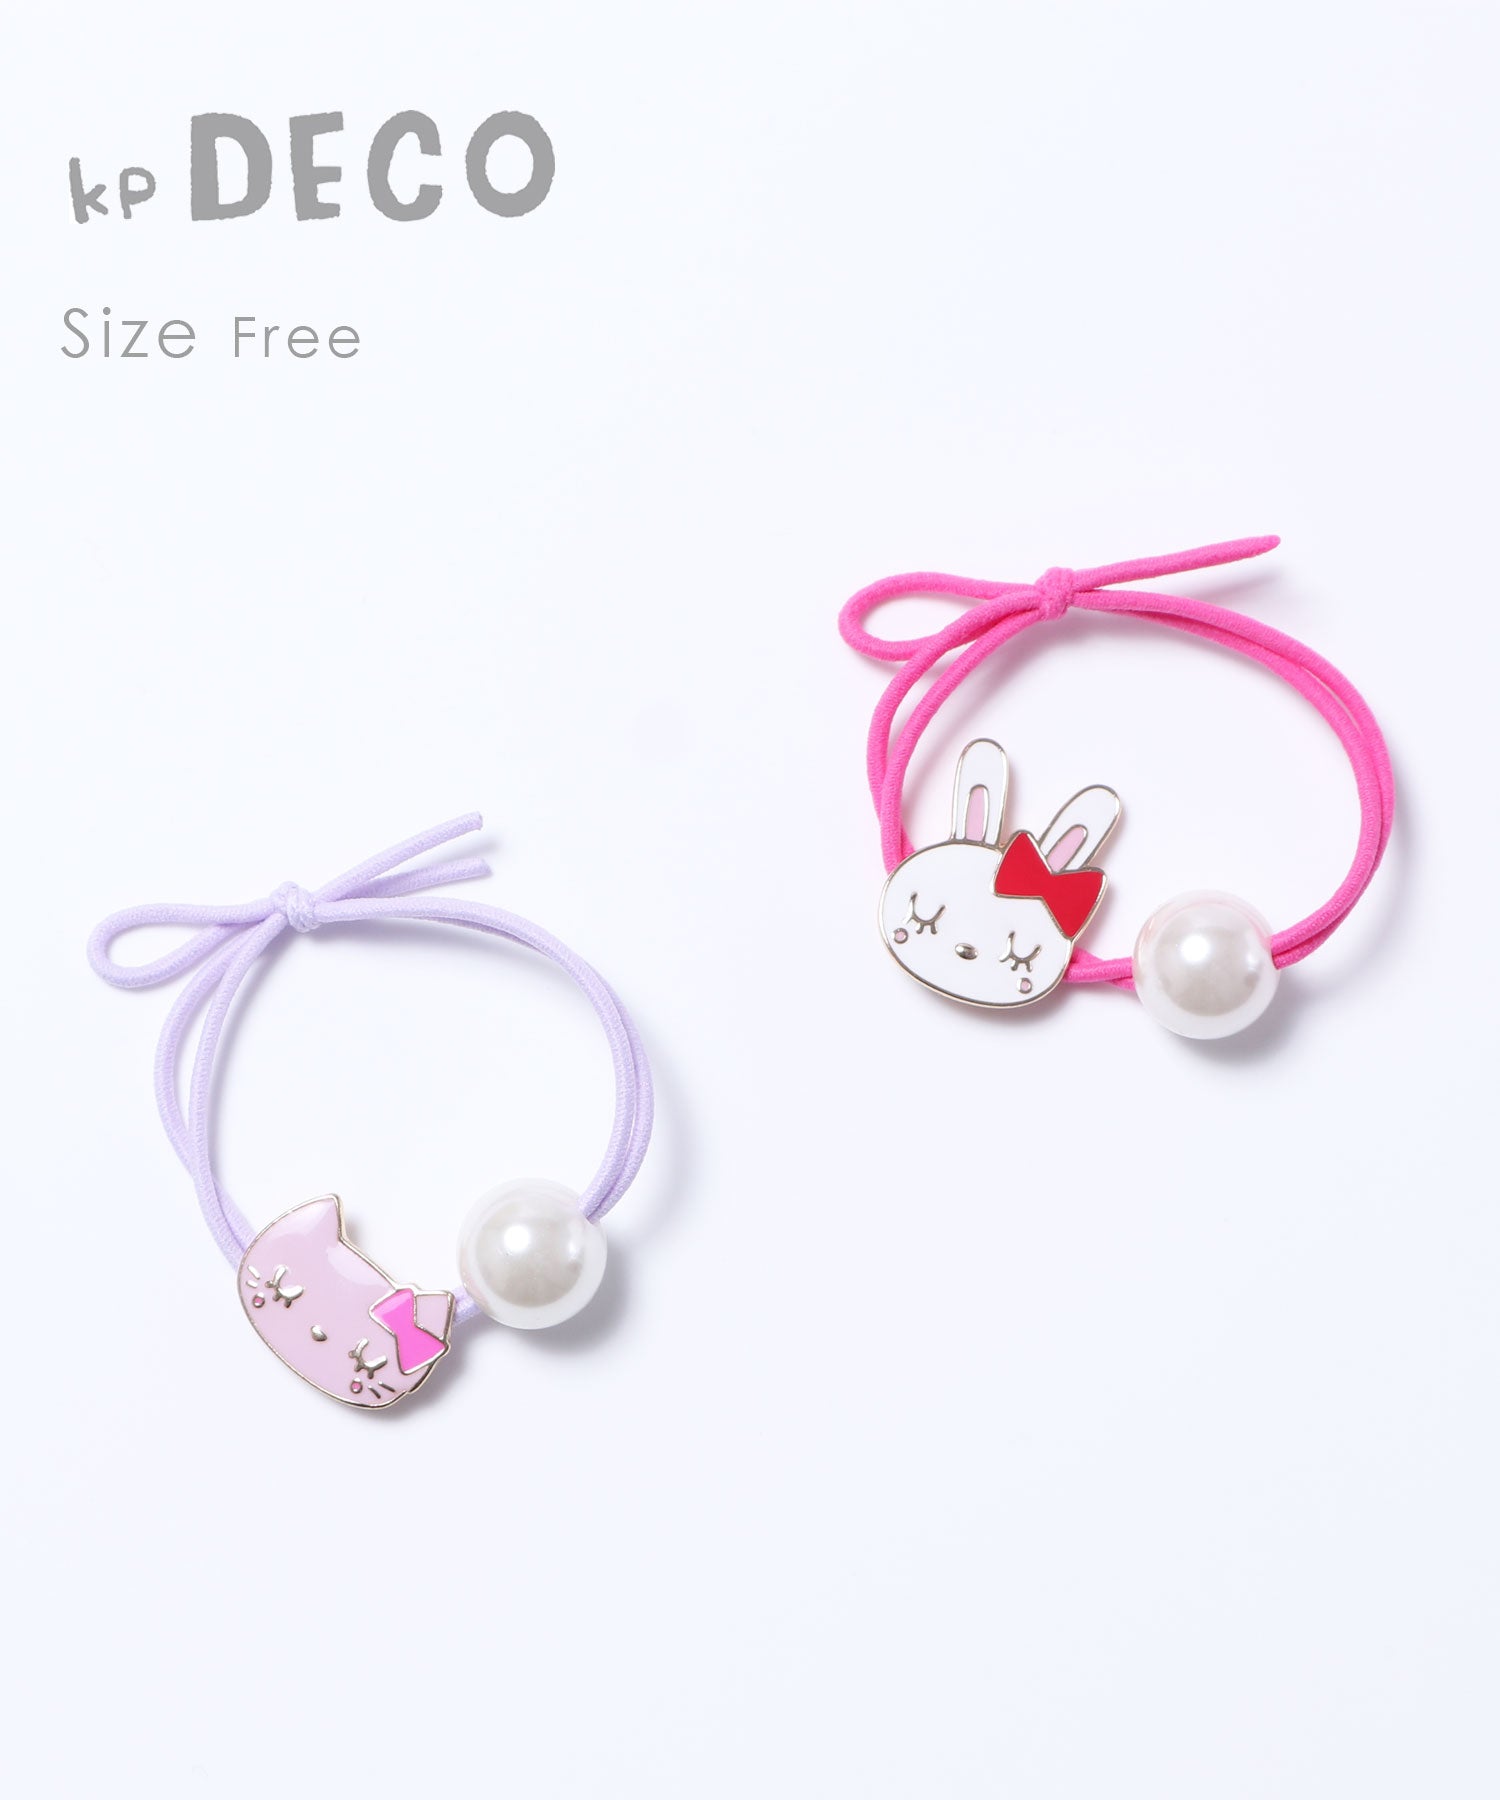 Kpdeco ケーピーデコ ミミちゃん ココちゃんのモチーフと大きなパールのヘアゴム Kp ケーピー Knit Planner 公式サイト